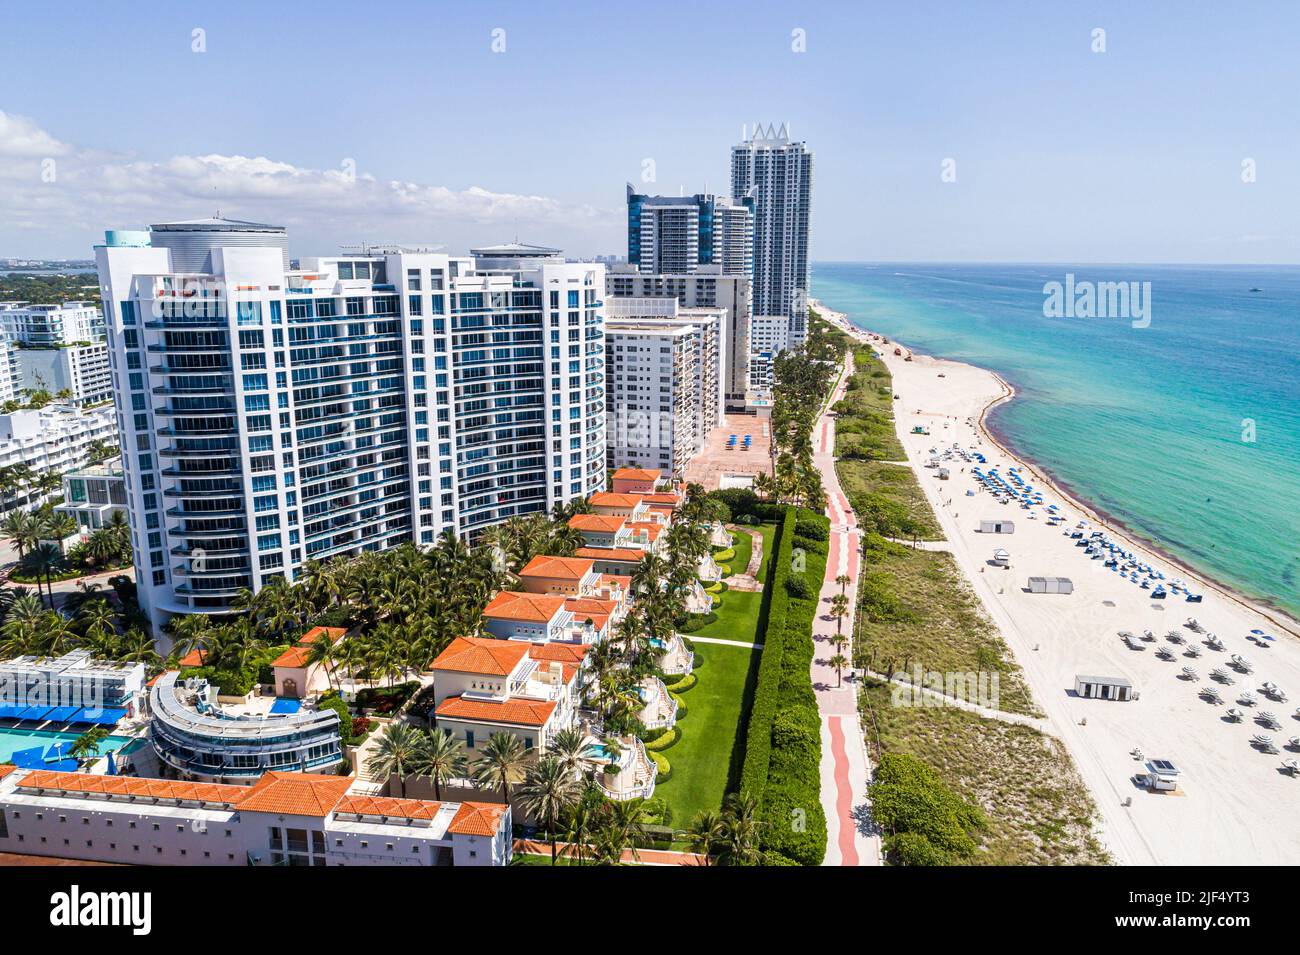 Miami Beach Florida, vue aérienne depuis le dessus, plage publique sur le littoral de l'océan Atlantique, immeubles en copropriété en bord de mer, Bath Club Banque D'Images